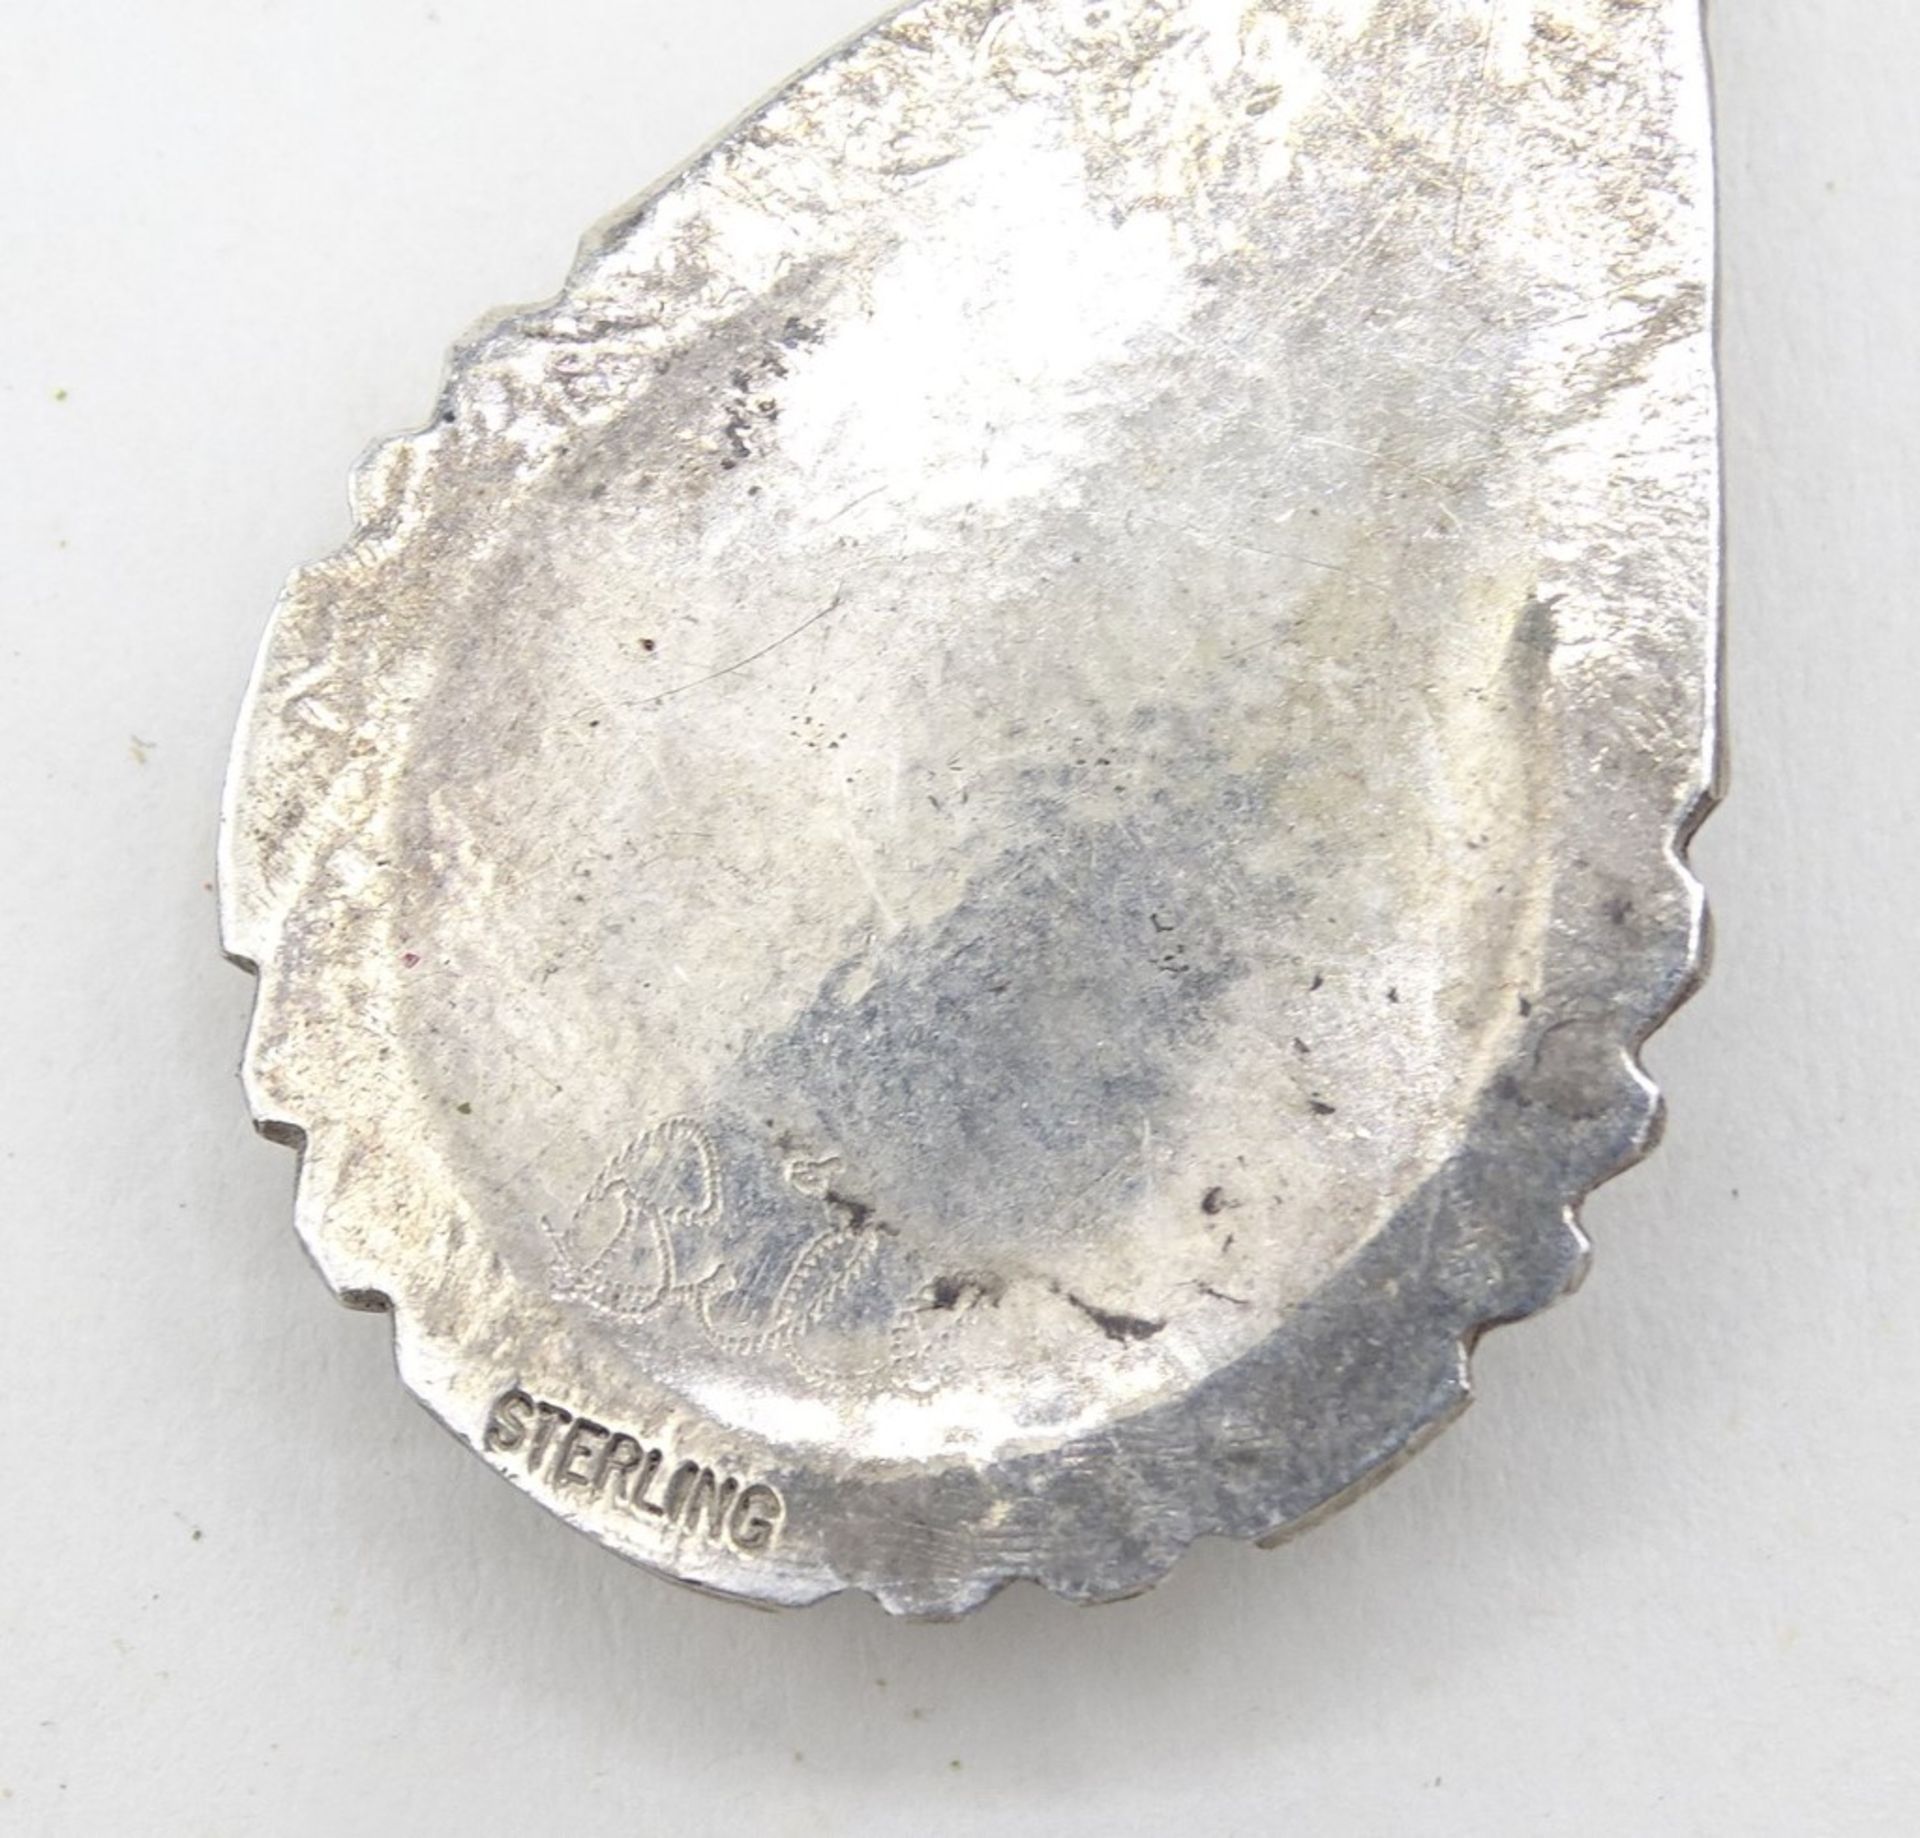 2 Anhänger, Silber mit Türkisen, 1 x gepr., 925/000, Gravur "Bill", 1 x Marke "MCH", L. 4 und 4,5 c - Bild 3 aus 4